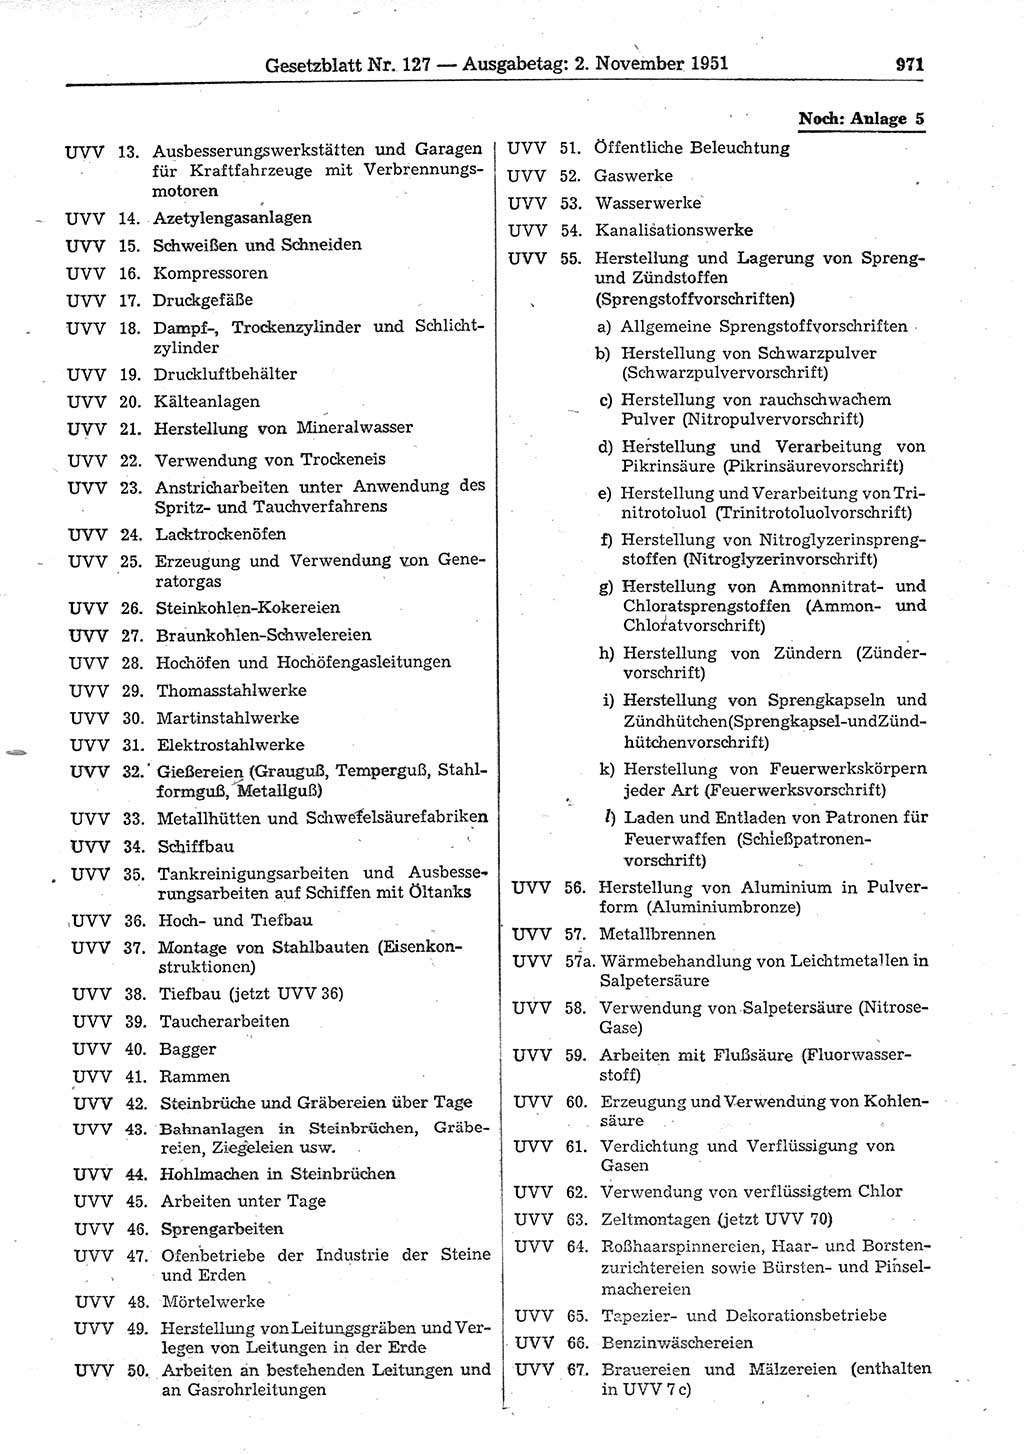 Gesetzblatt (GBl.) der Deutschen Demokratischen Republik (DDR) 1951, Seite 971 (GBl. DDR 1951, S. 971)